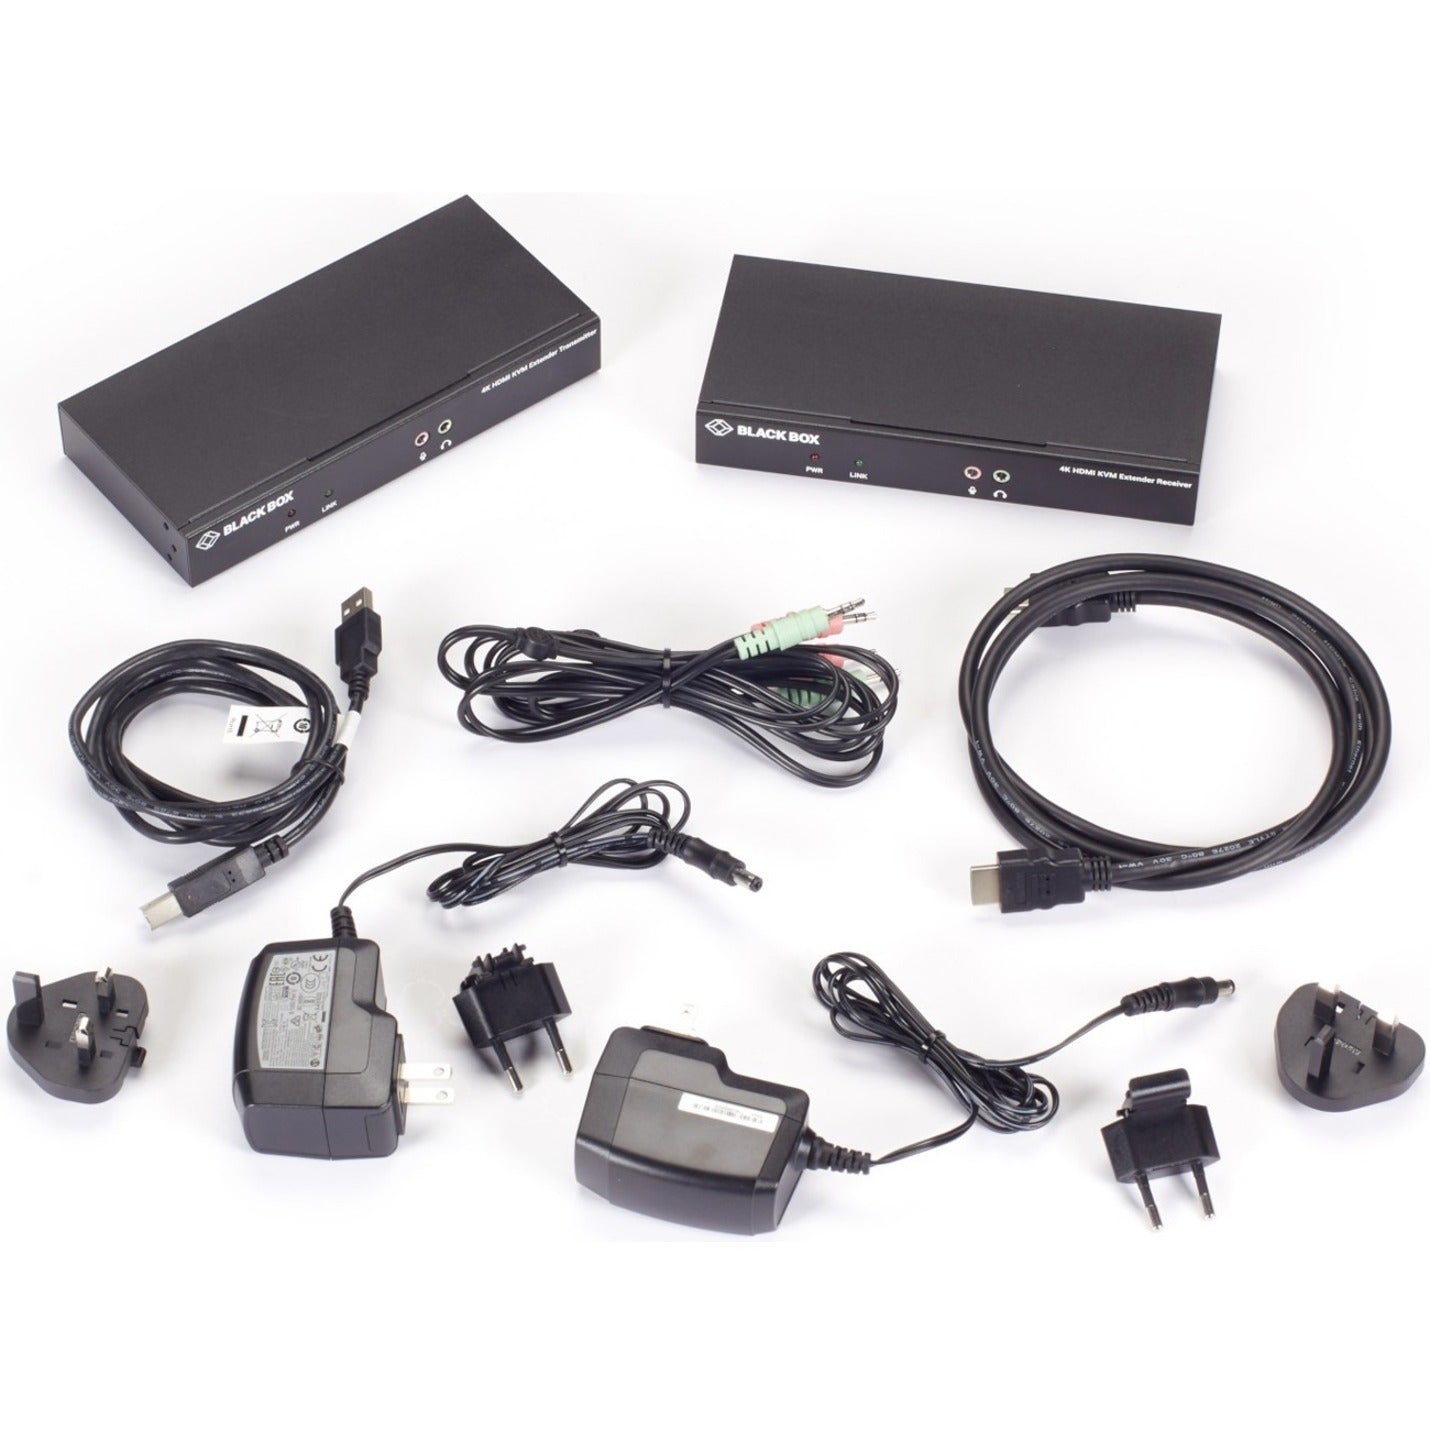 Black Box KVXLCHF-100 KVM Console/Extender